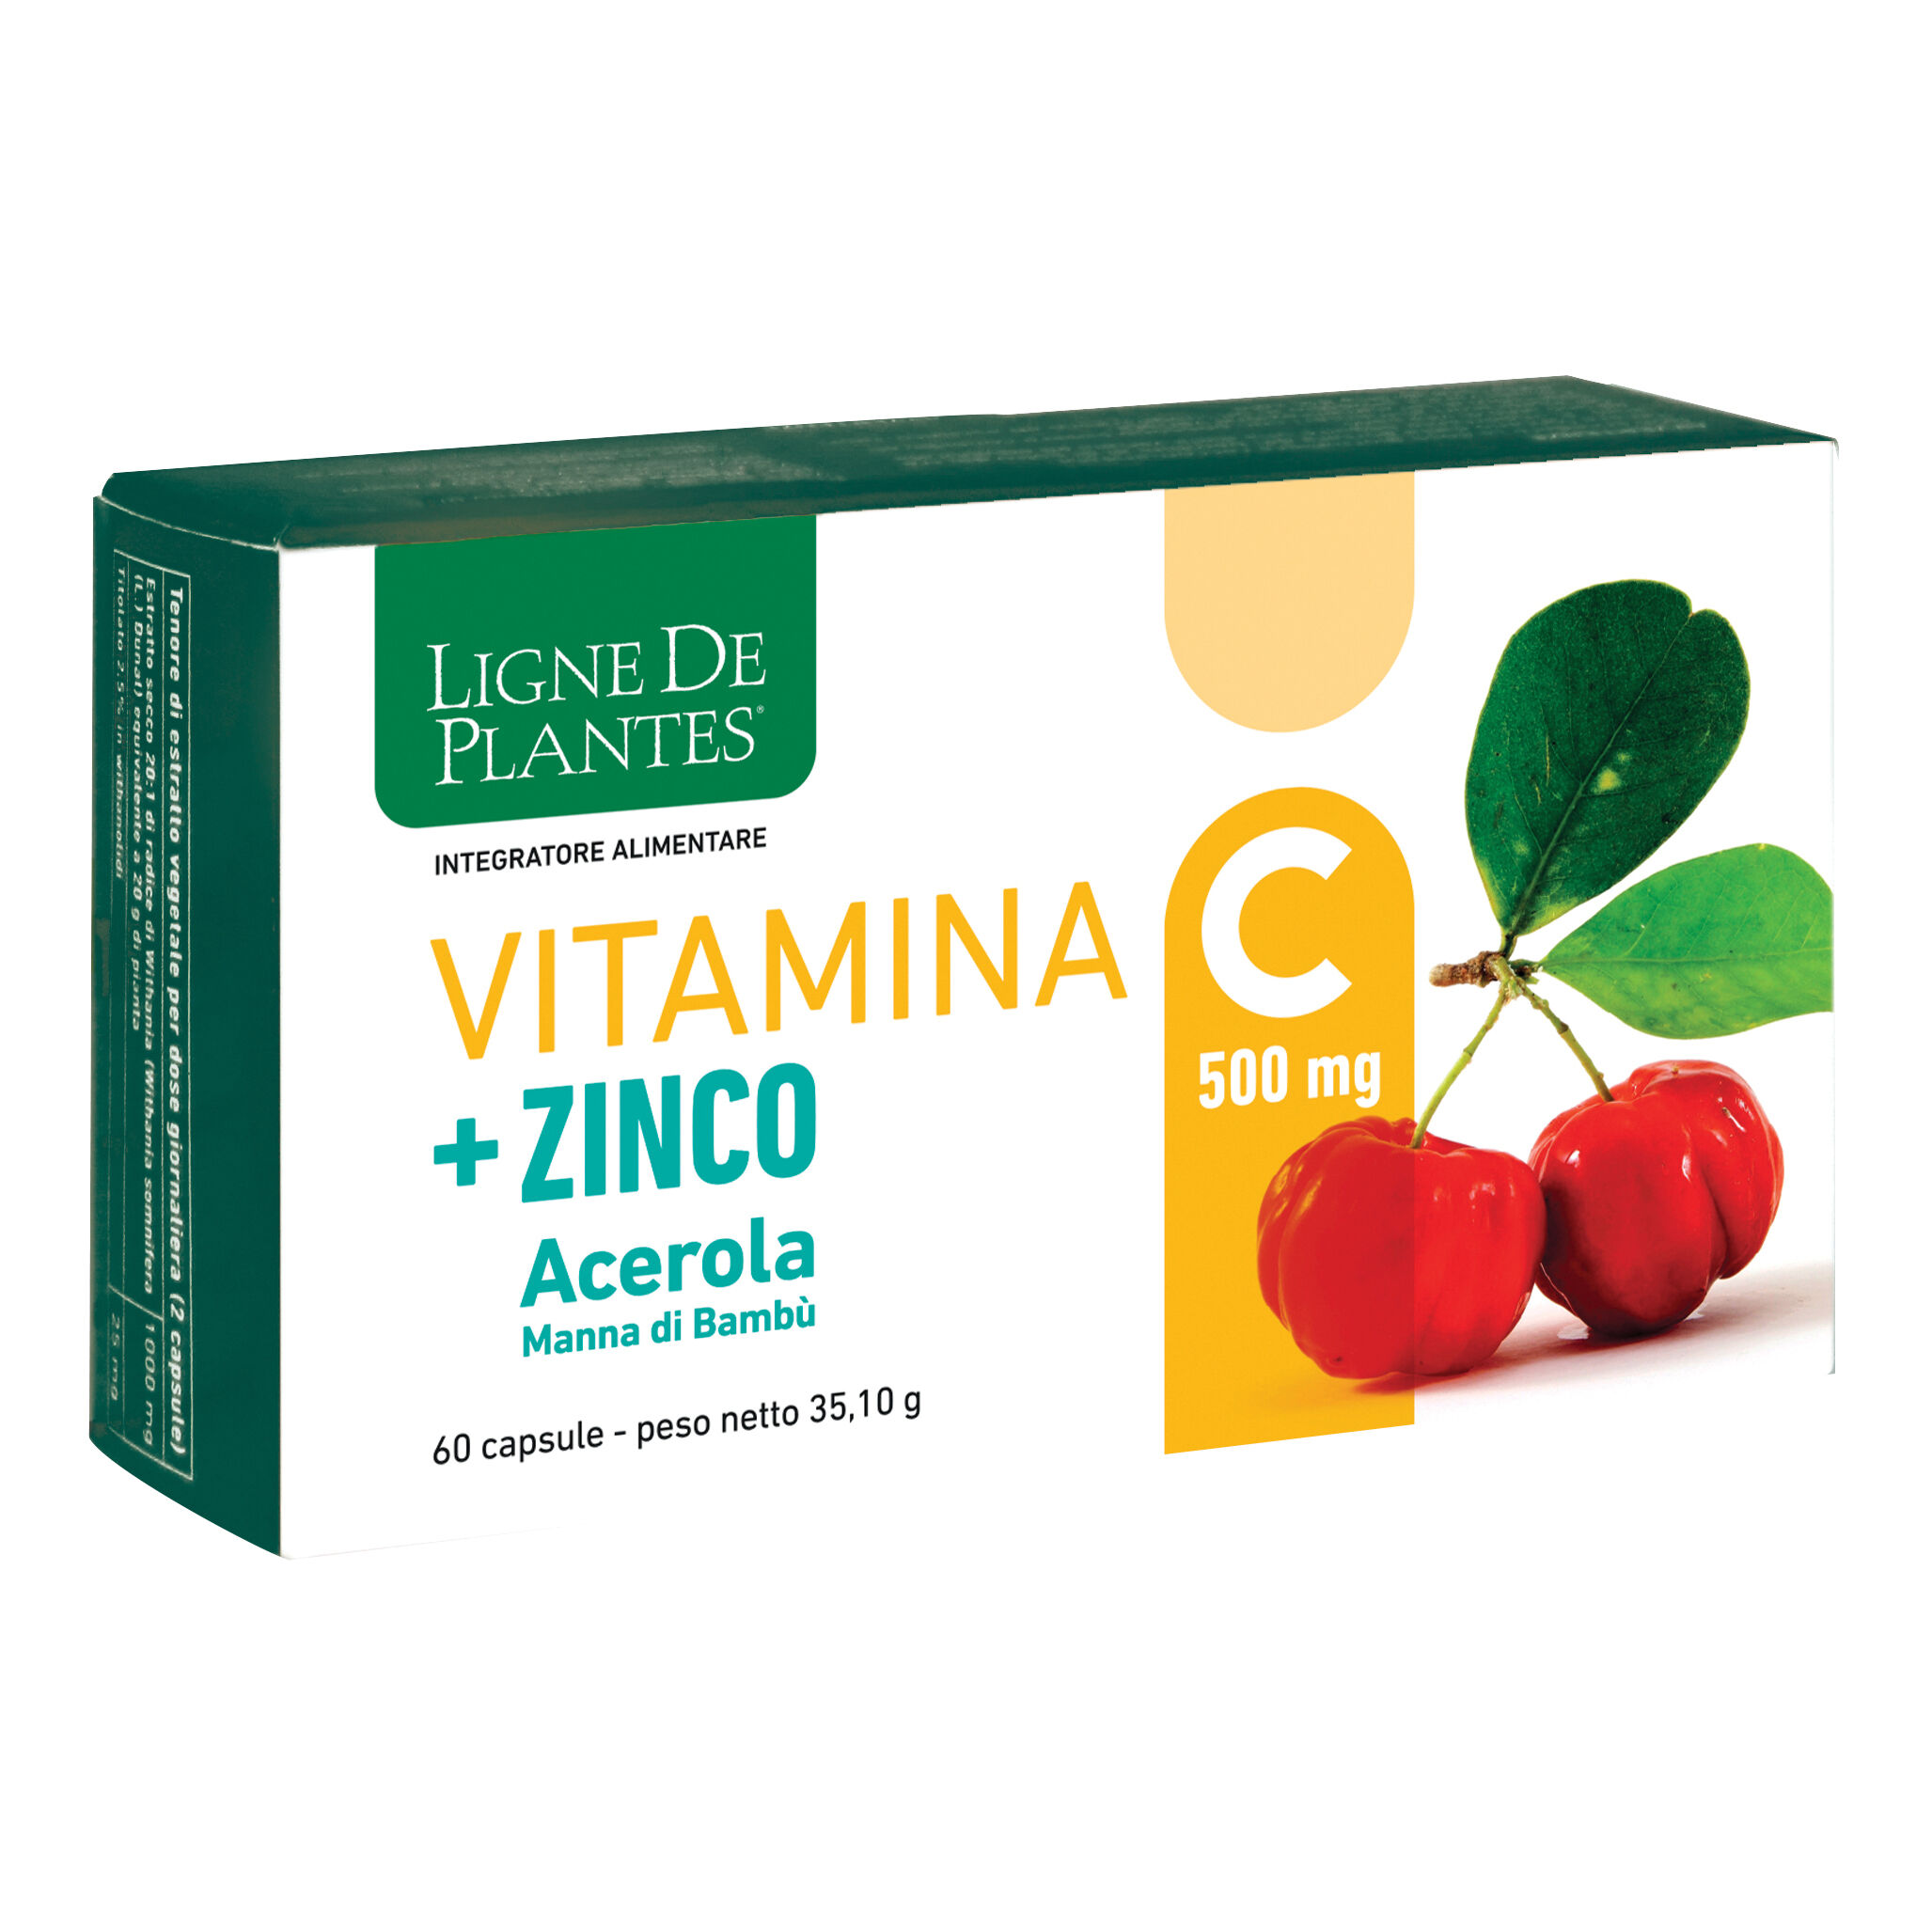 natura service srl ligne de plantes vitamina c 500 mg + zinco acerola e manna di bambu' 60 capsule